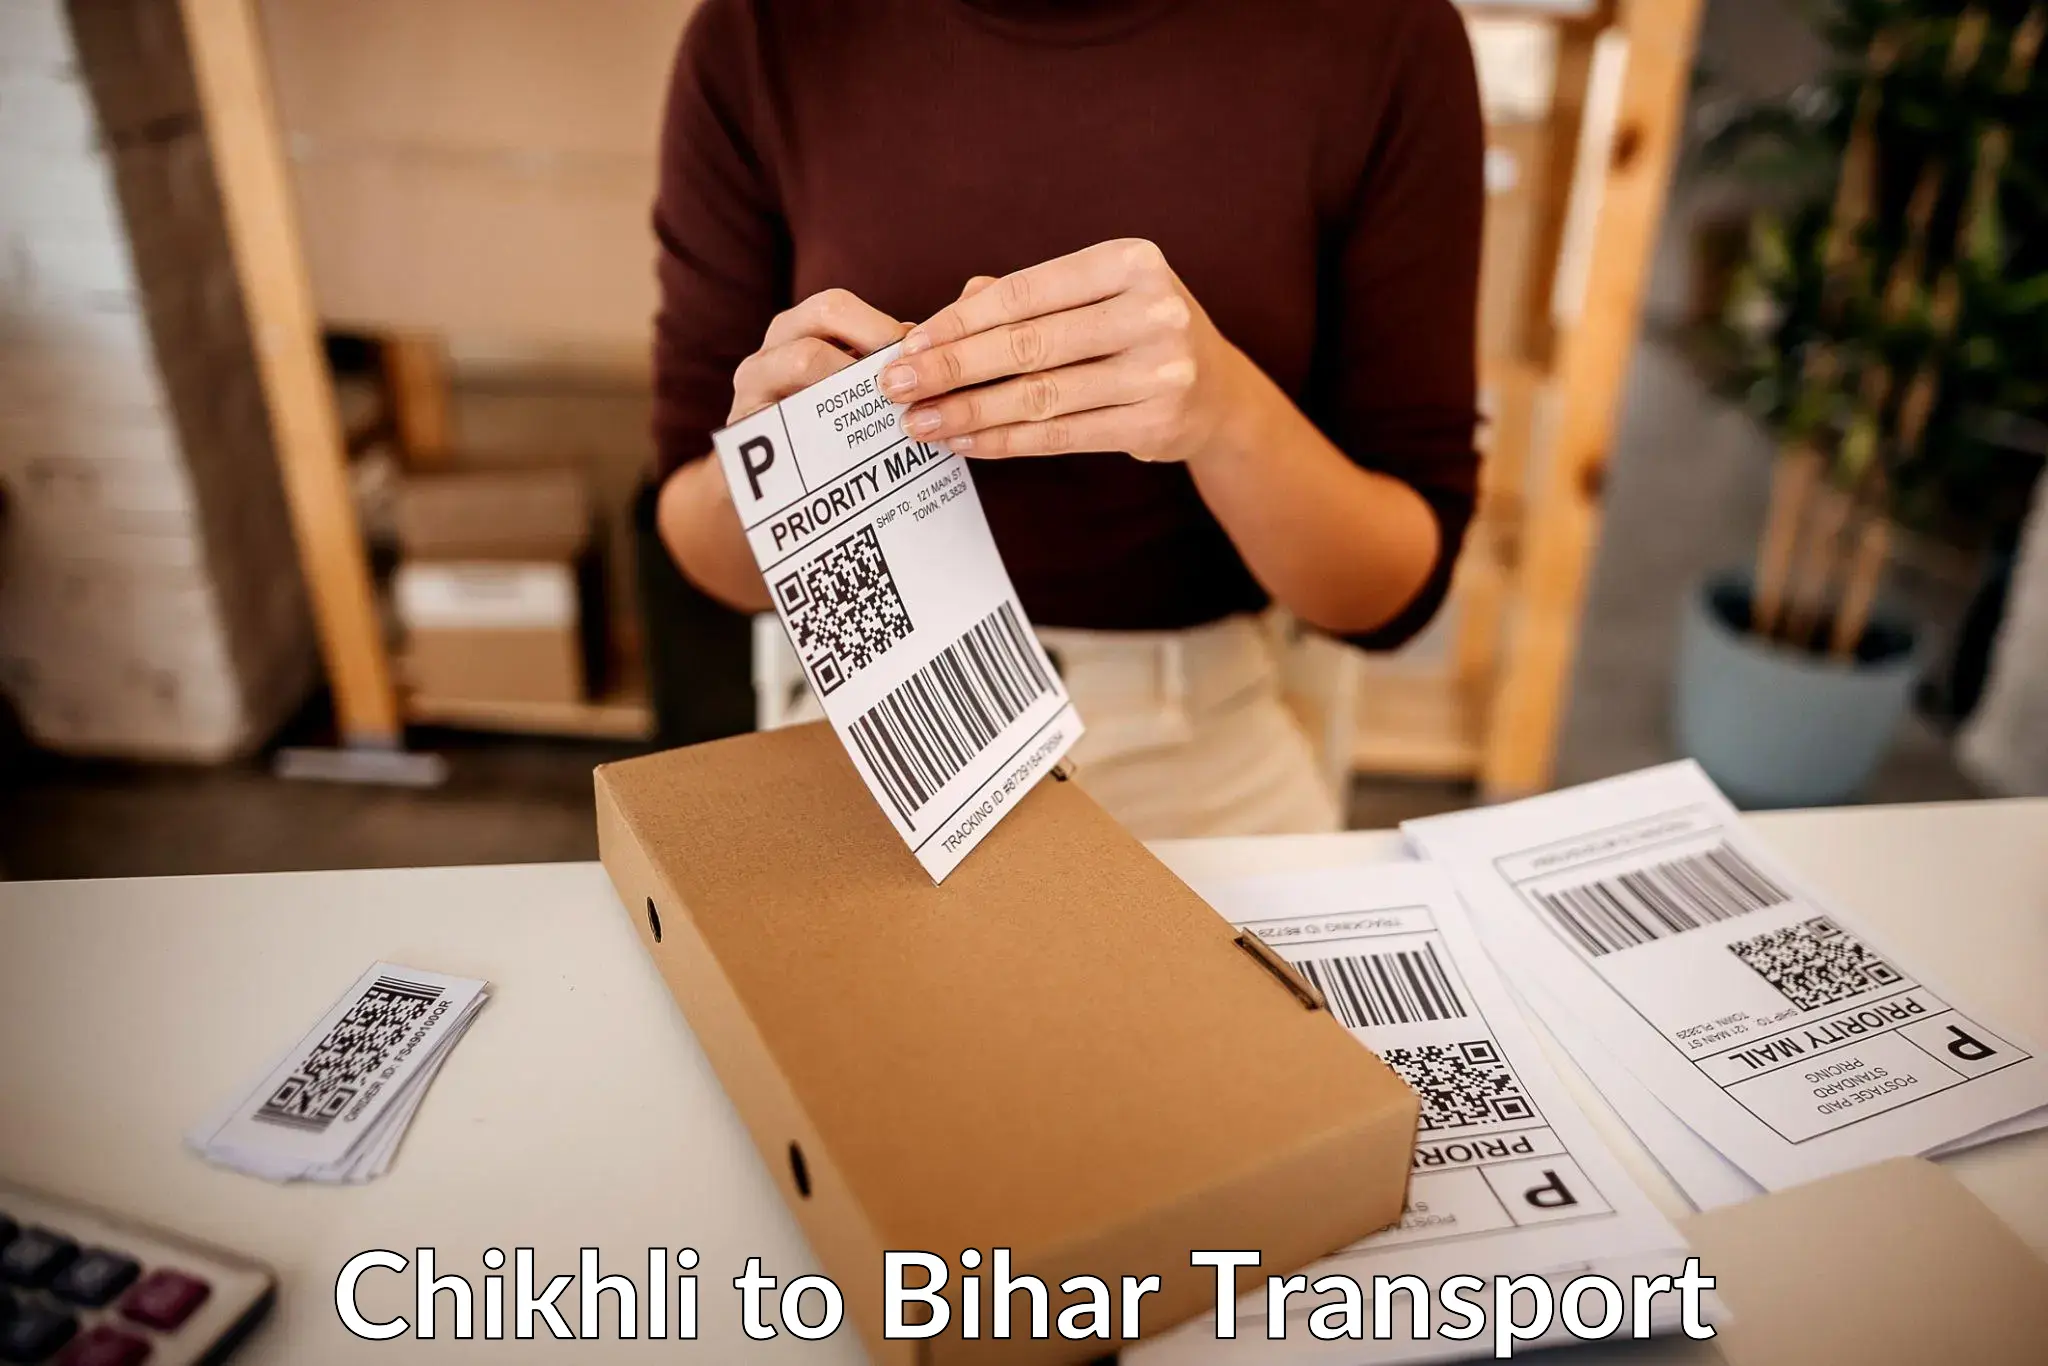 Delivery service Chikhli to Sonbarsa